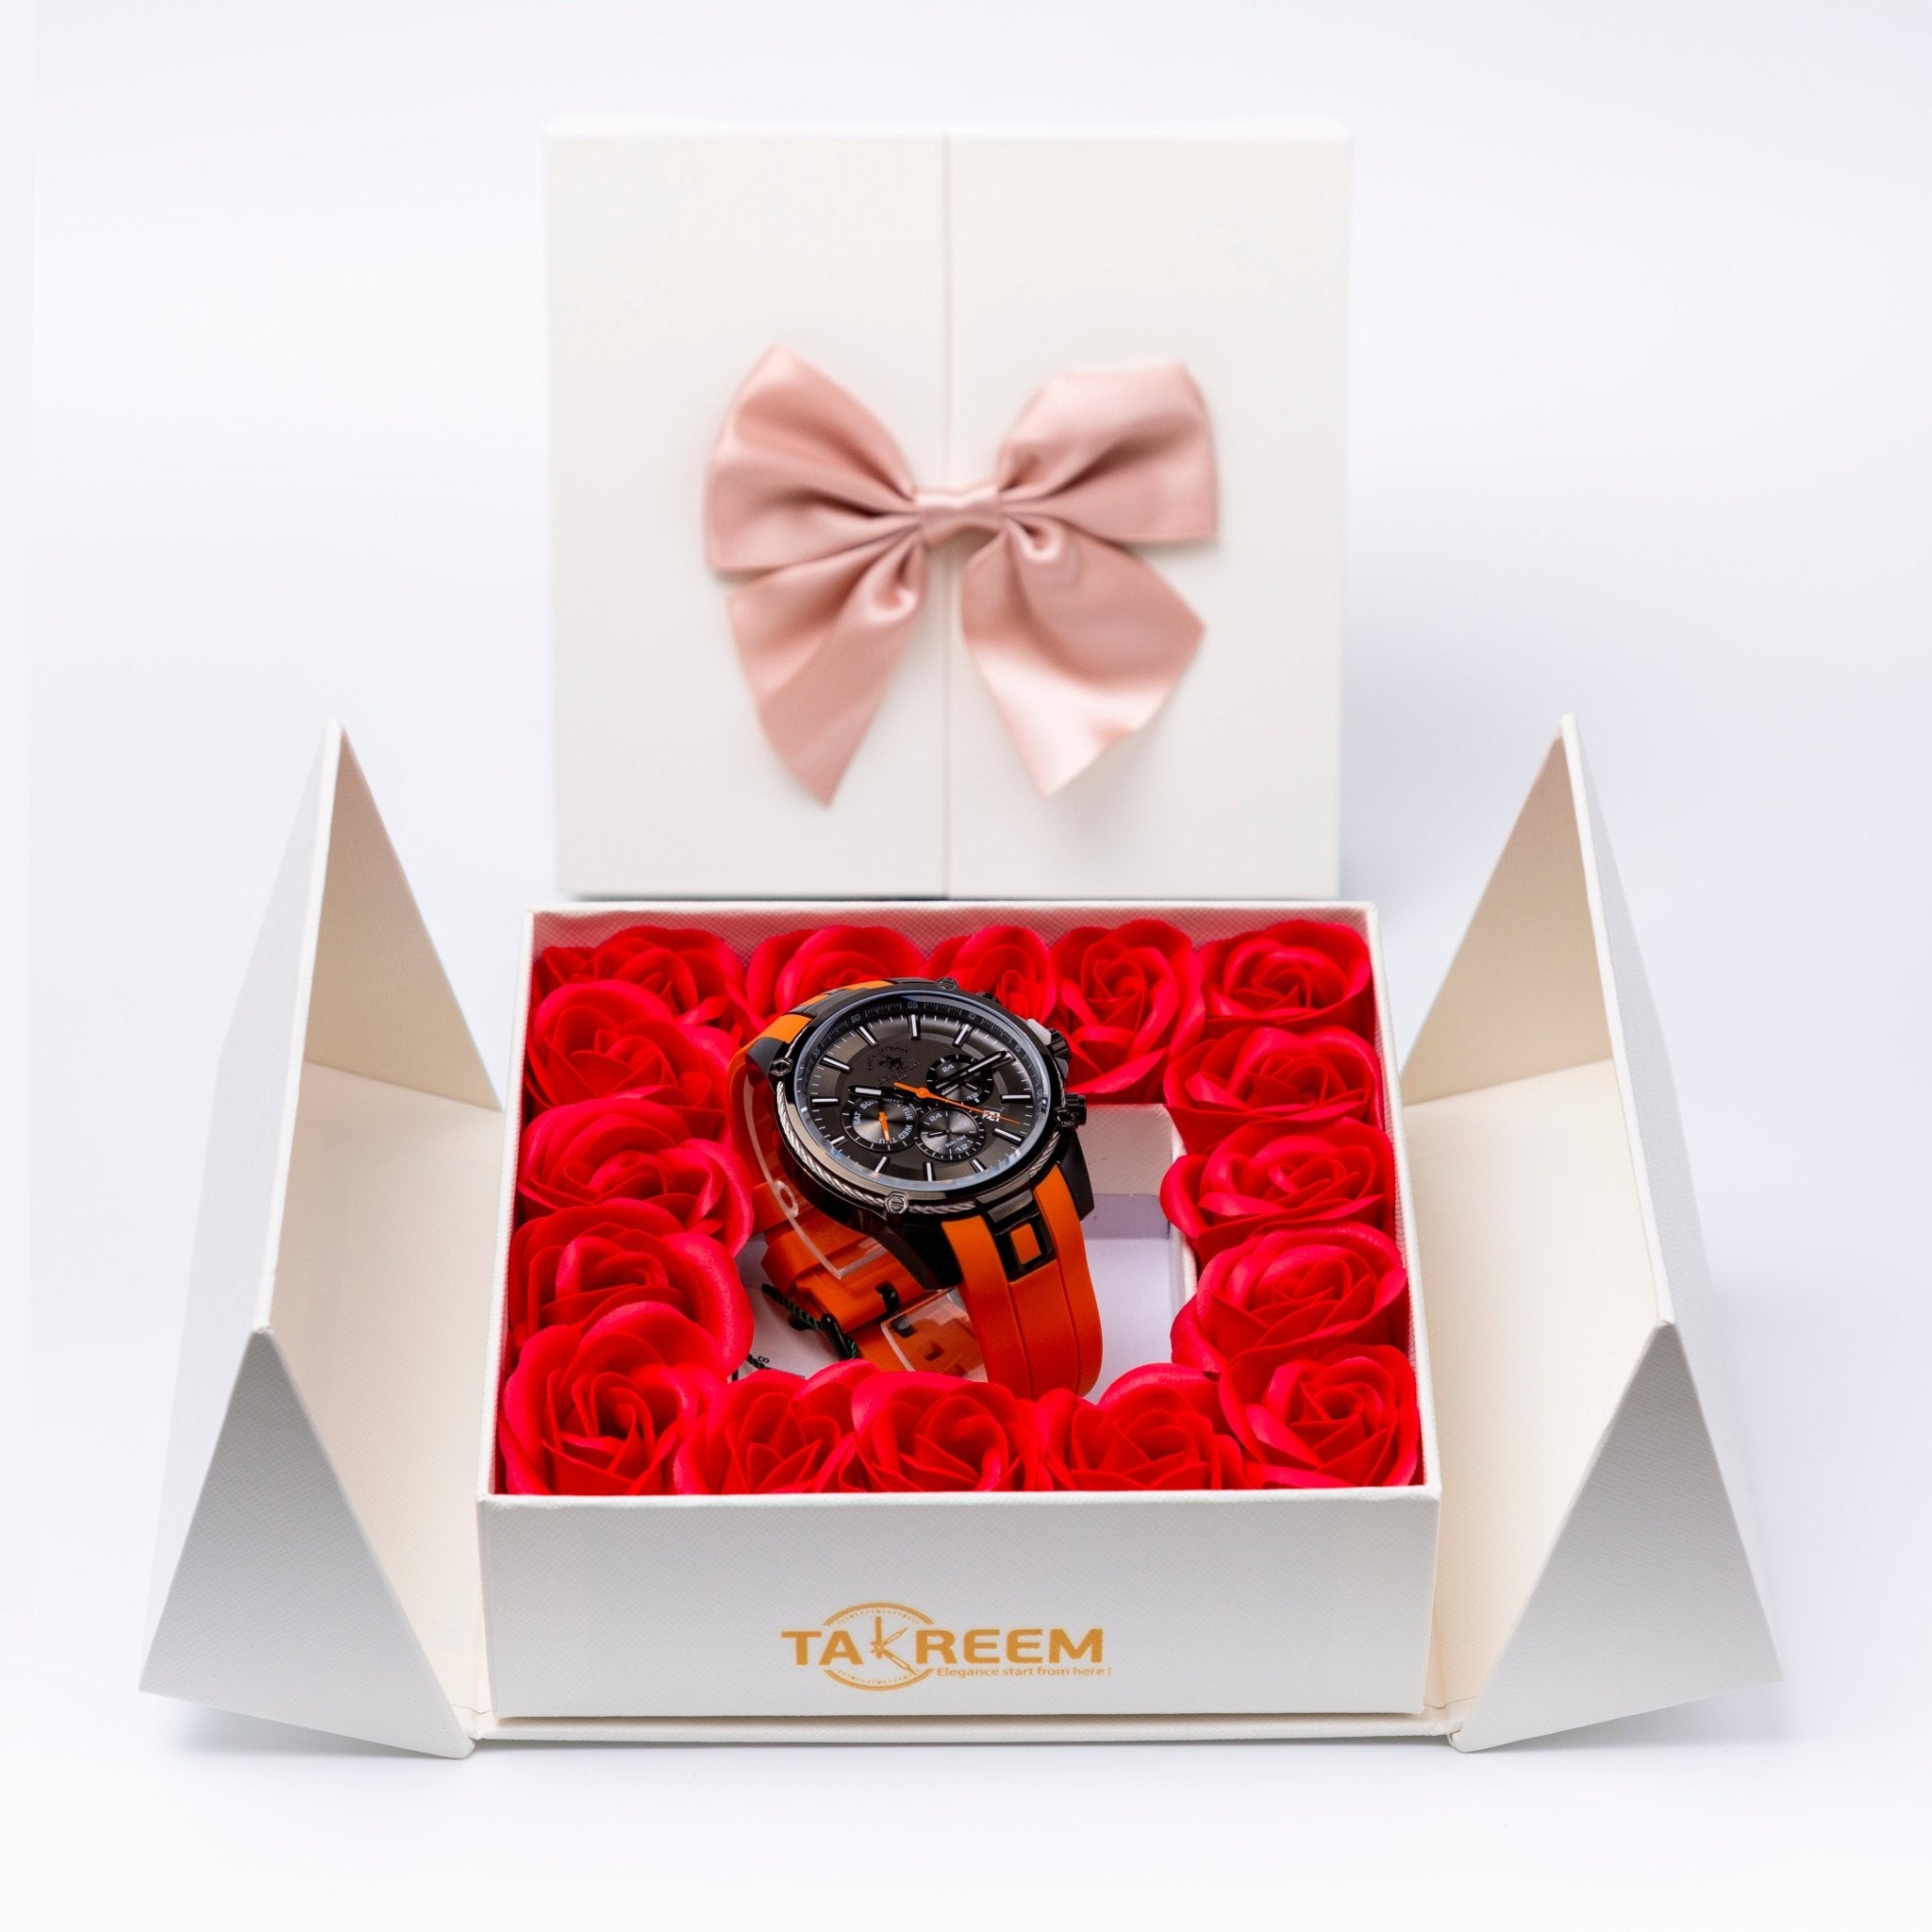 Flower Box - Gift For Men 28 - #shoFlower Box - Gift For Men 28p_name#Flower Box - Gift For Men 28Gift Boxes & TinsTakreemTakreem.joMenWatchFlower Box - Gift For Men 28 - Takreem.jo